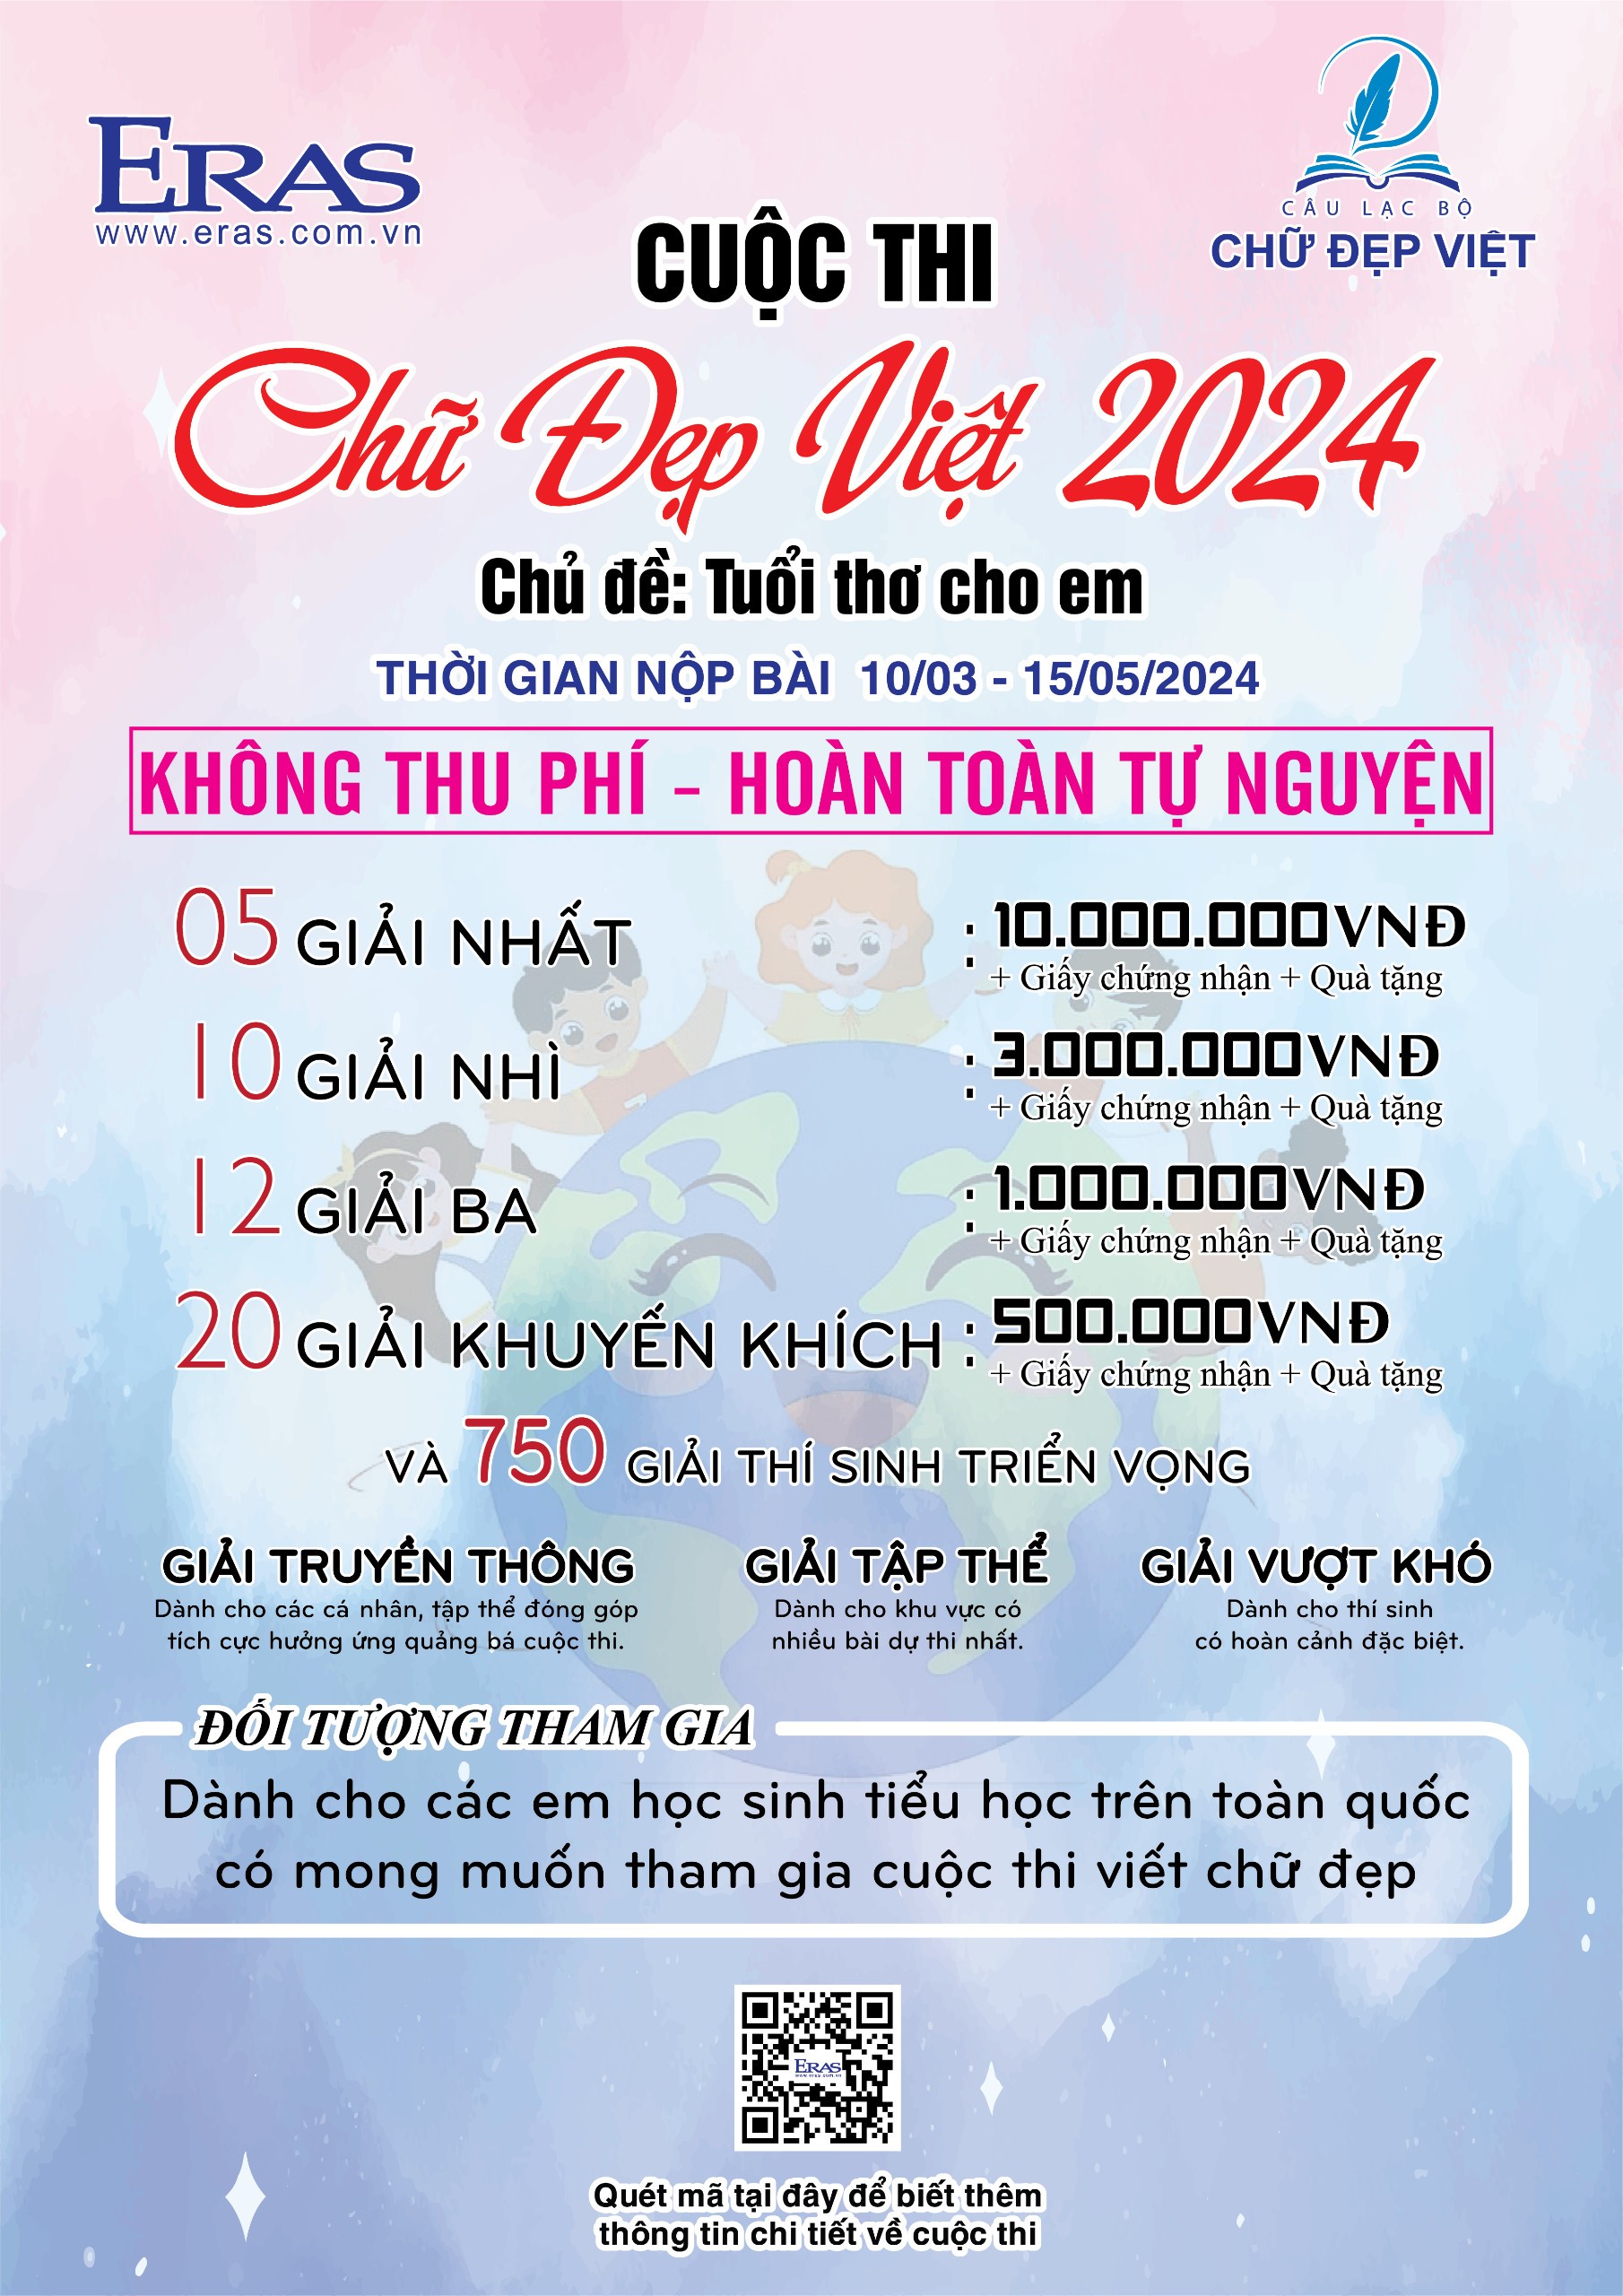 Thể lệ cuộc thi "Chữ Đẹp Việt" năm 2024